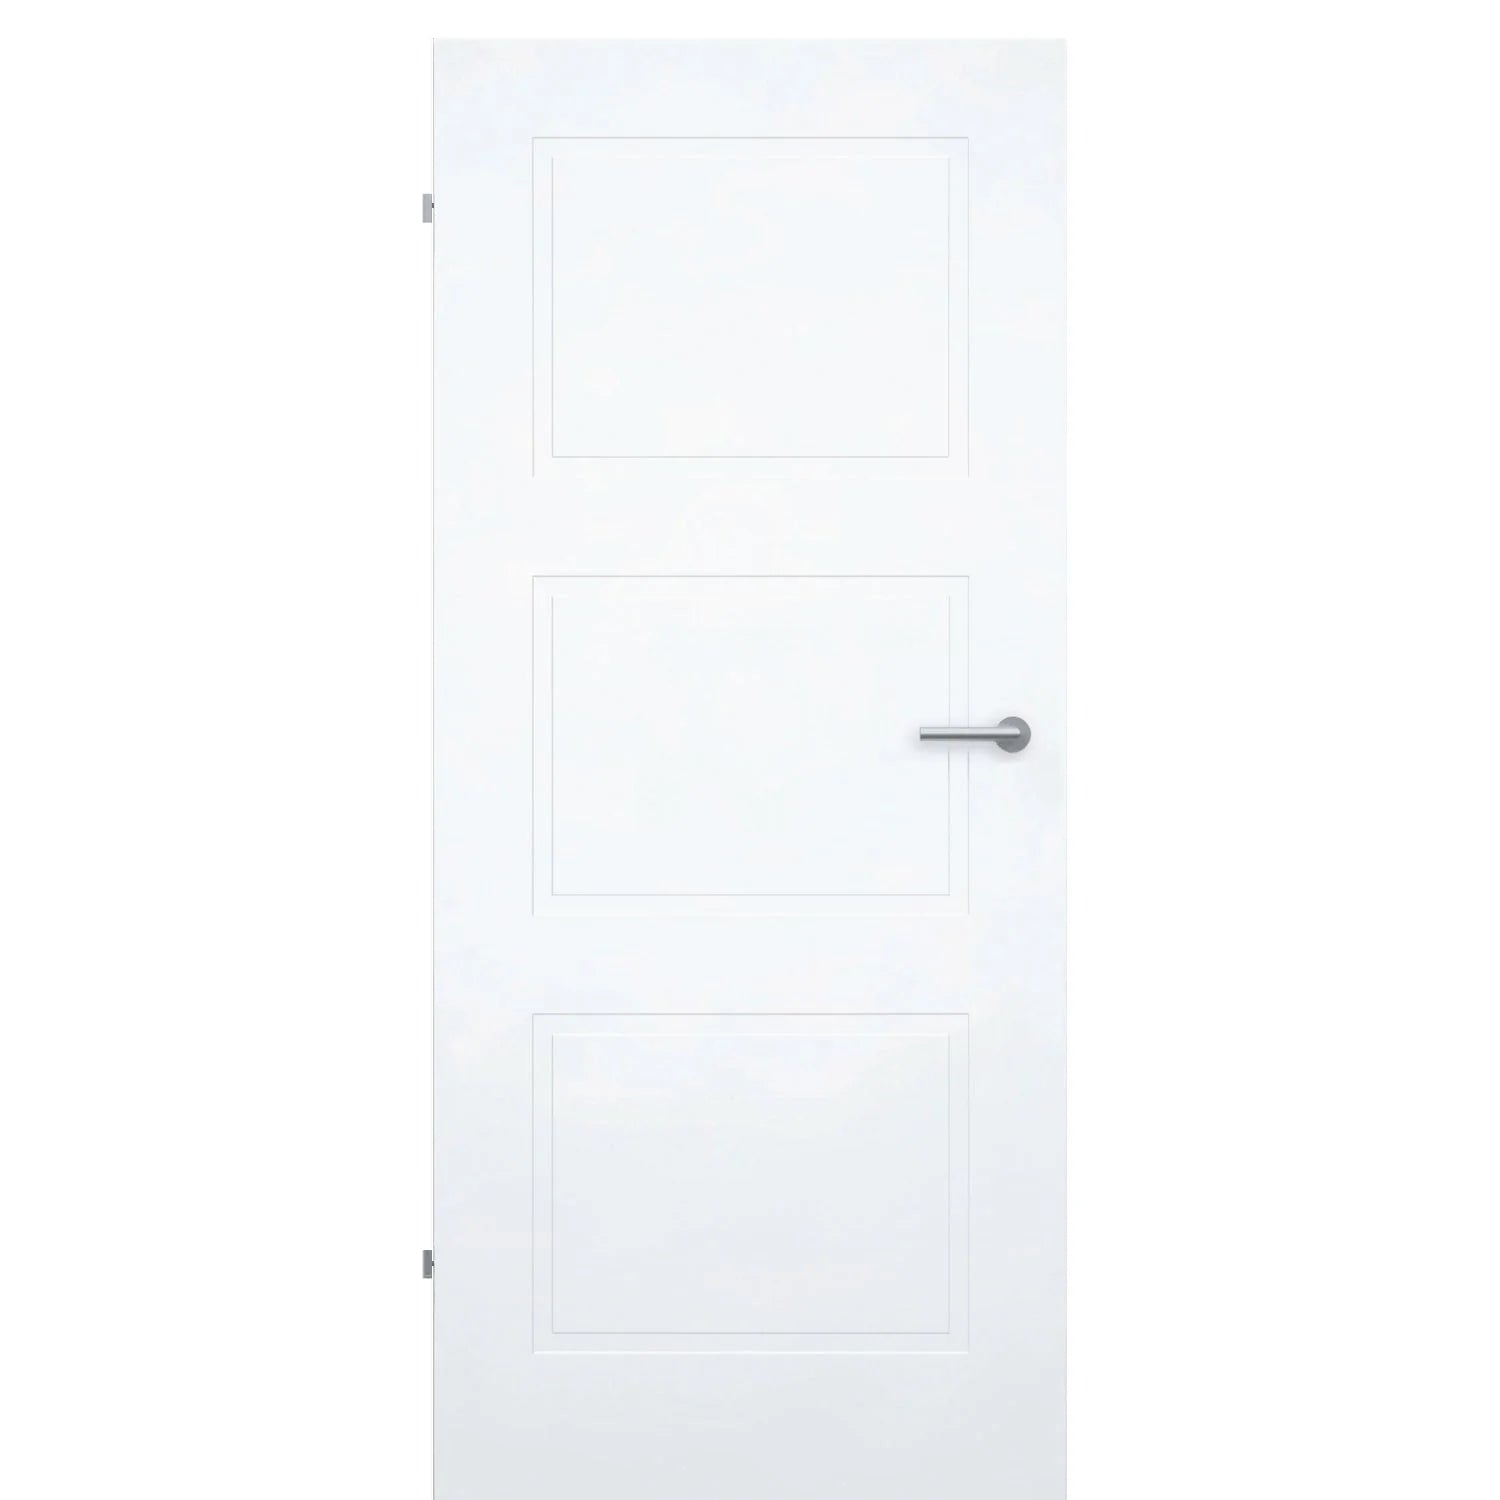 Zimmertür ohne Schlüssellochbohrung brillant-weiß Stiltür mit 3 Kassetten Designkante - Modell Stiltür M33